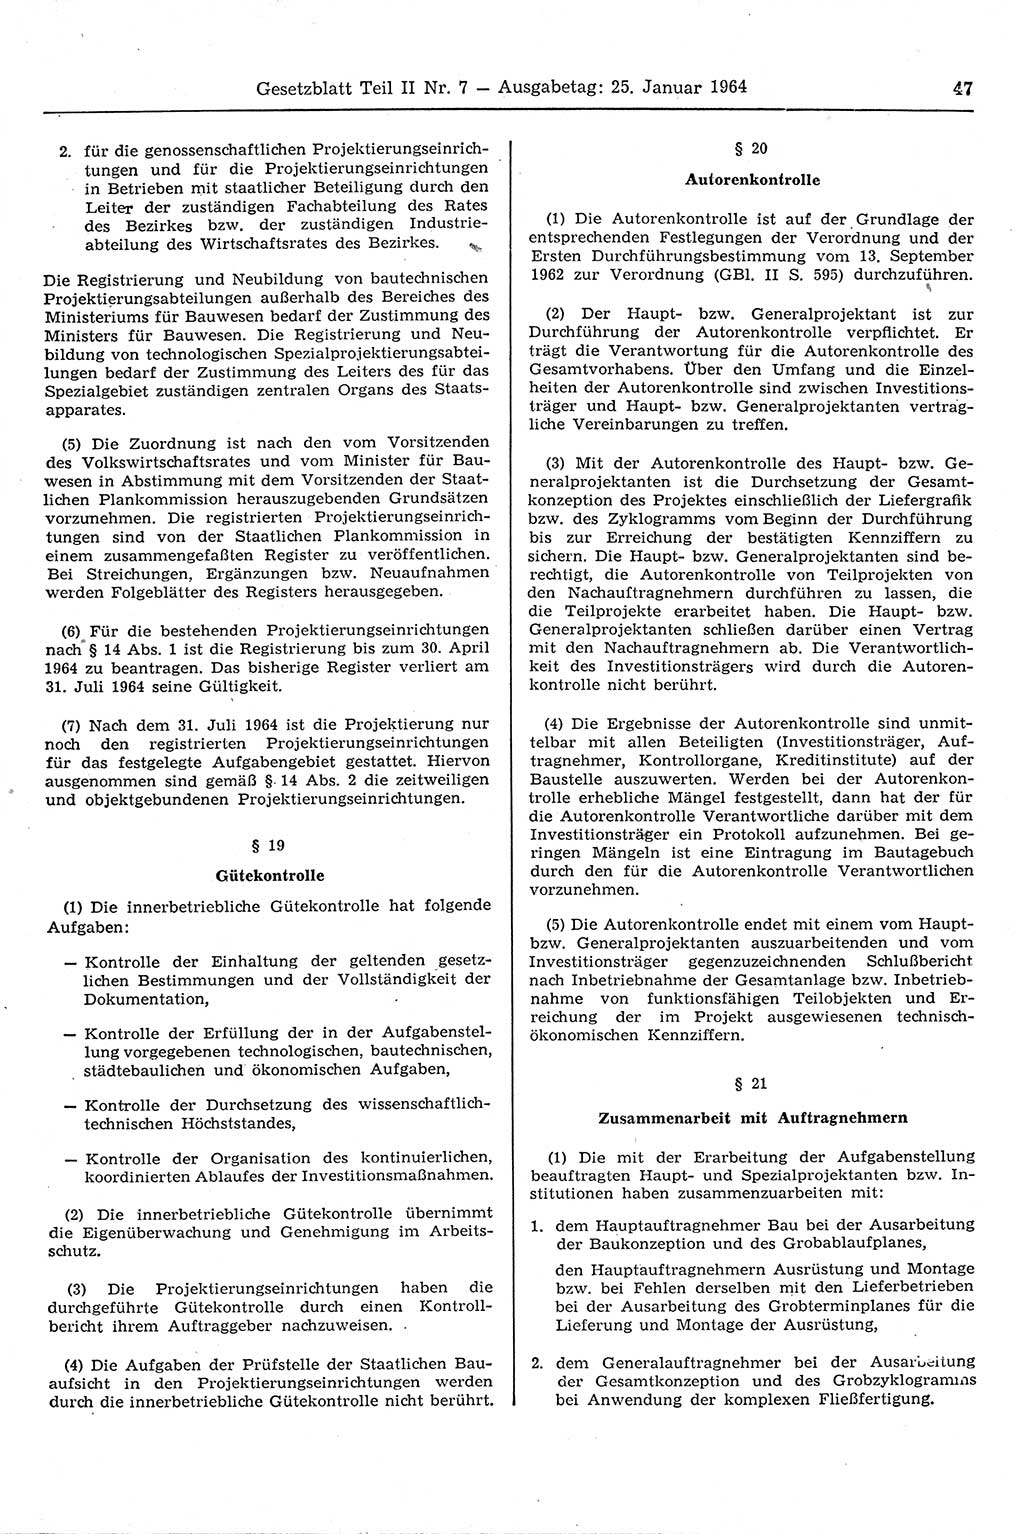 Gesetzblatt (GBl.) der Deutschen Demokratischen Republik (DDR) Teil ⅠⅠ 1964, Seite 47 (GBl. DDR ⅠⅠ 1964, S. 47)